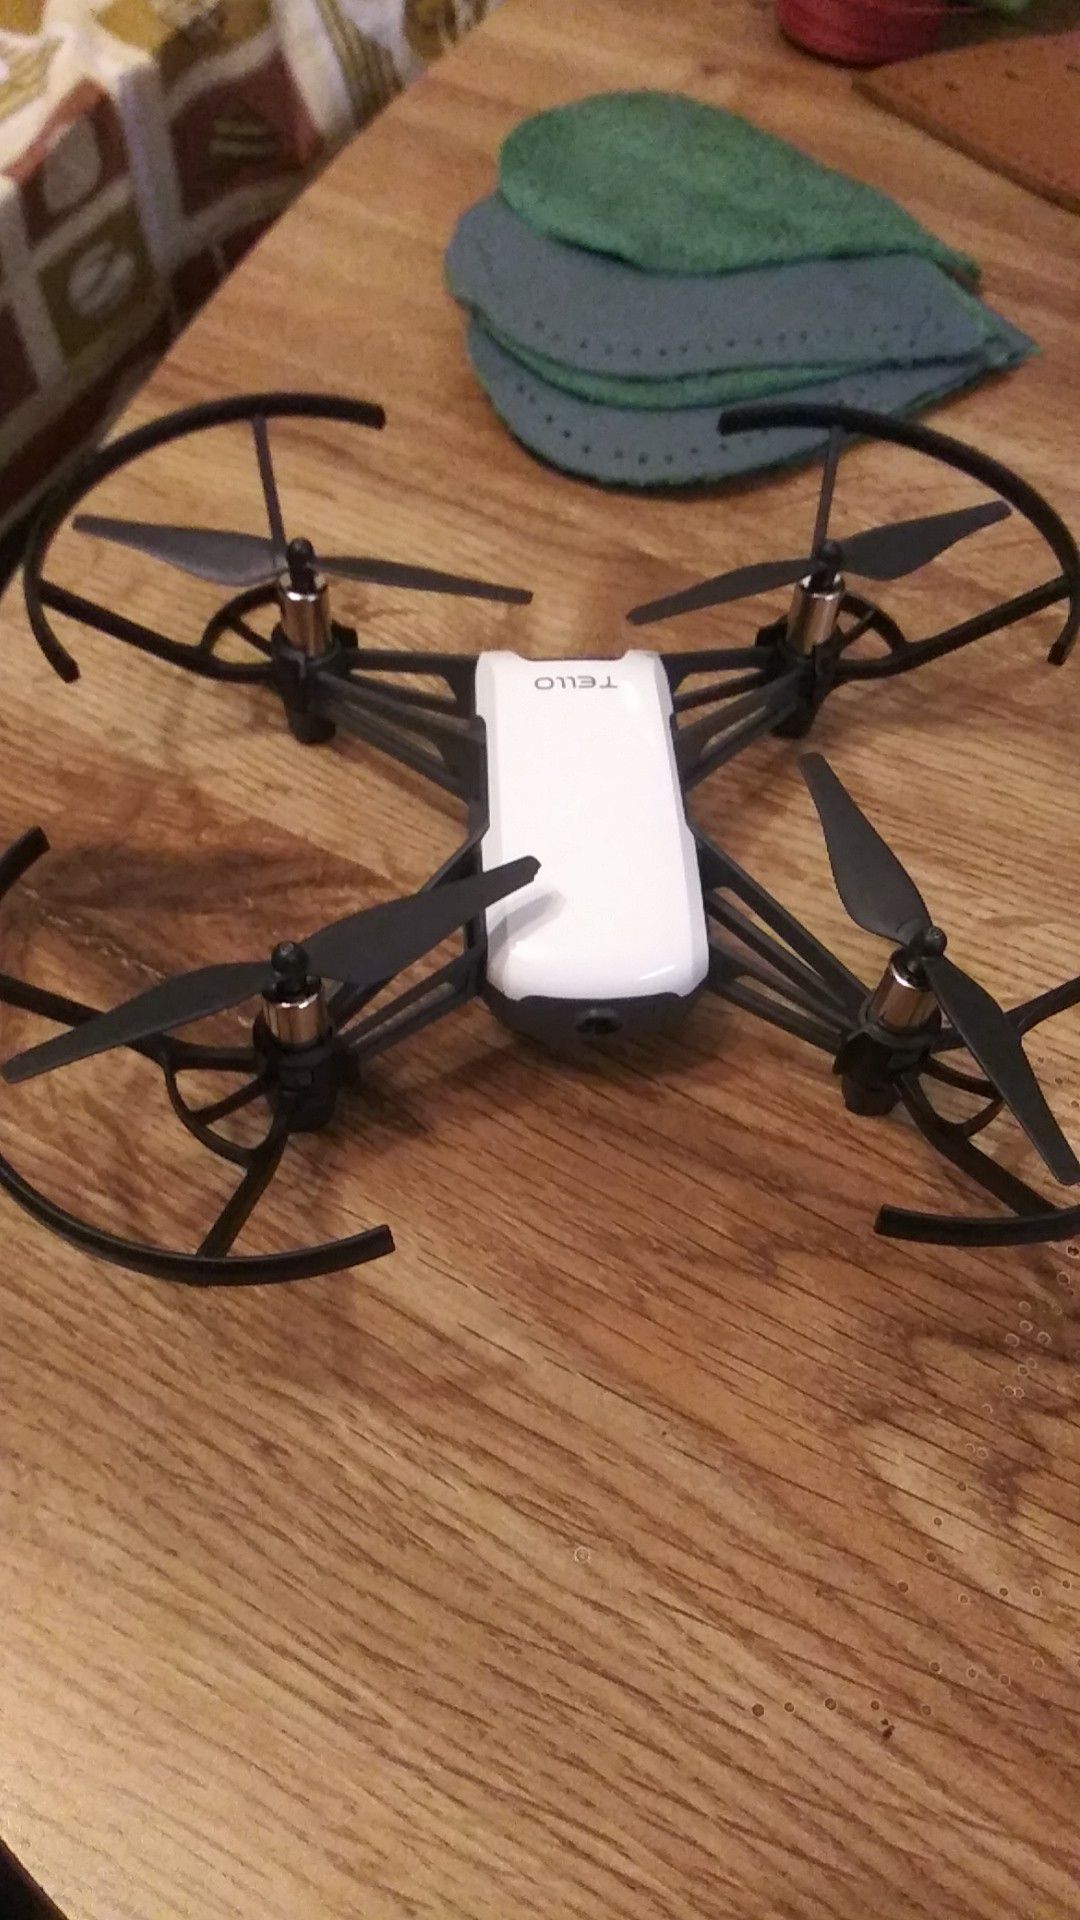 Tello drone 720fp